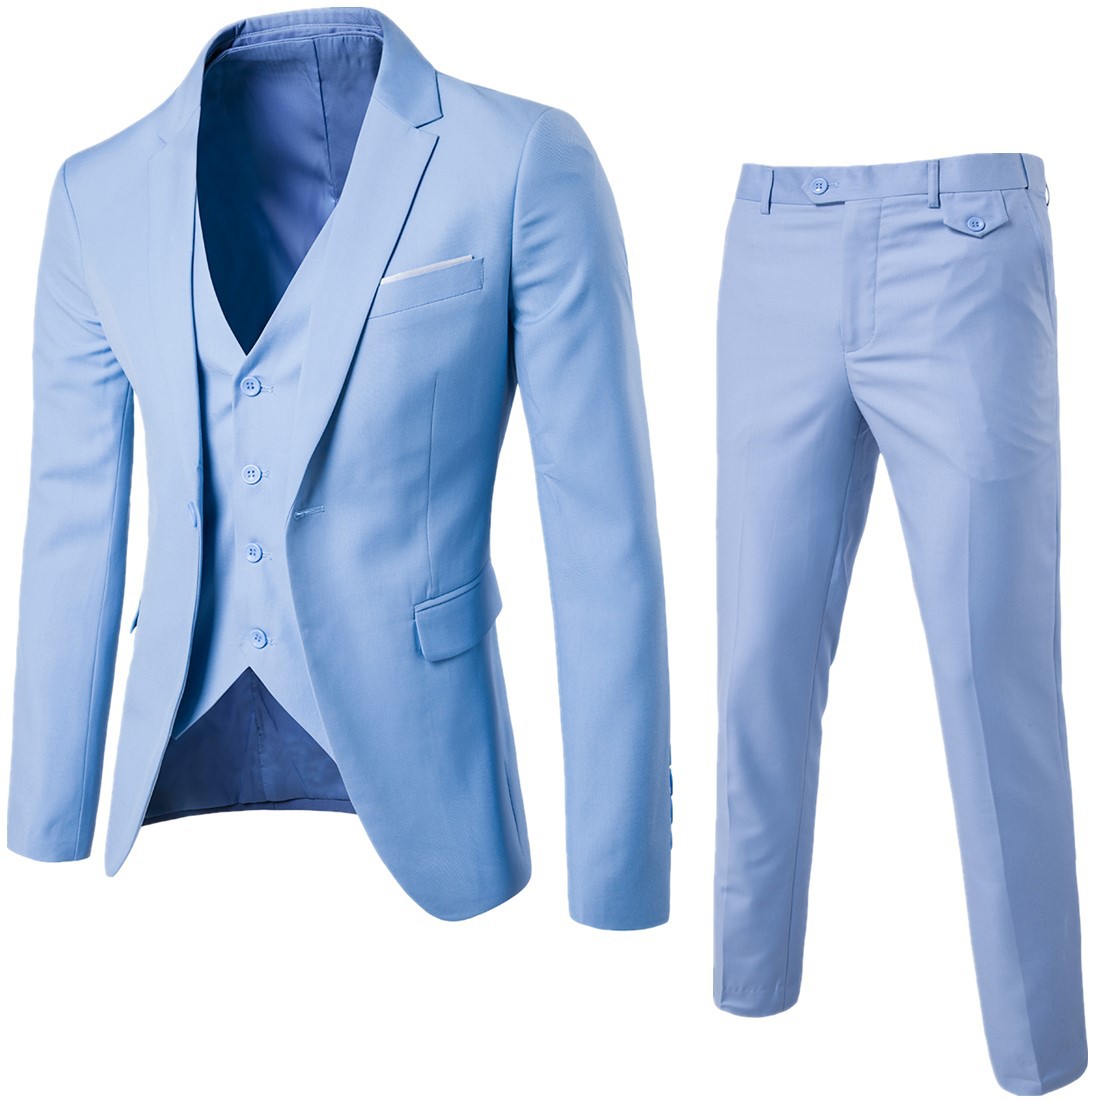 Cross border 2019 men's new suit, Korean slim fit, solid color professional formal men's casual suit, two-piece set